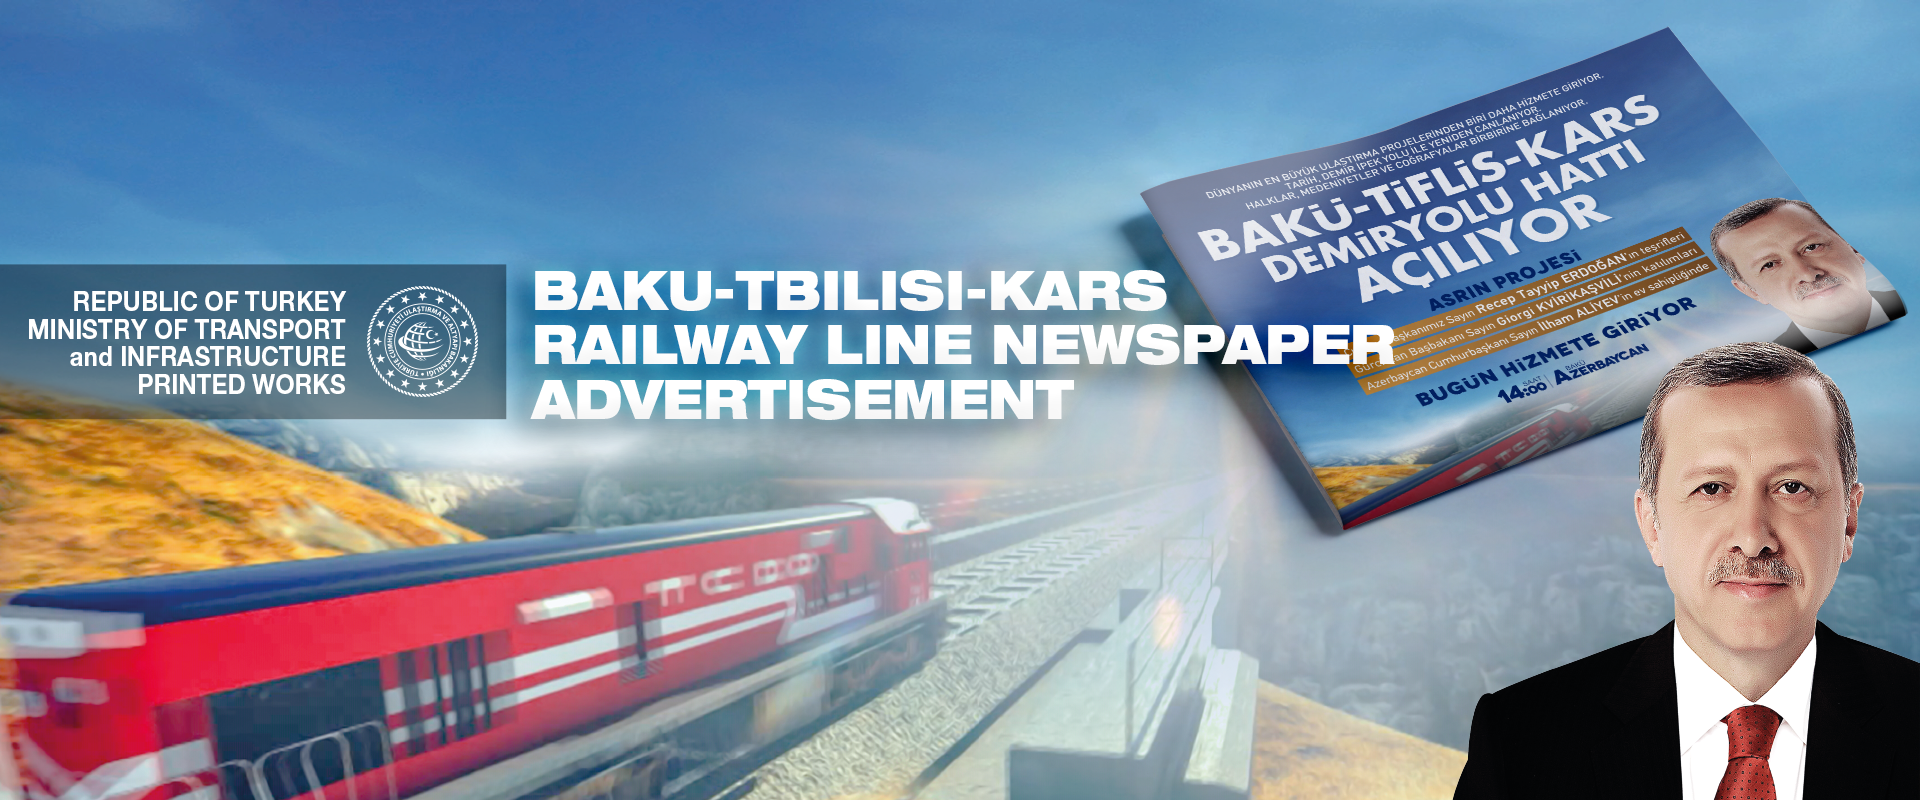 Bakü-Tiflis-Kars Demiryolu Açılışı Gazete İlanı